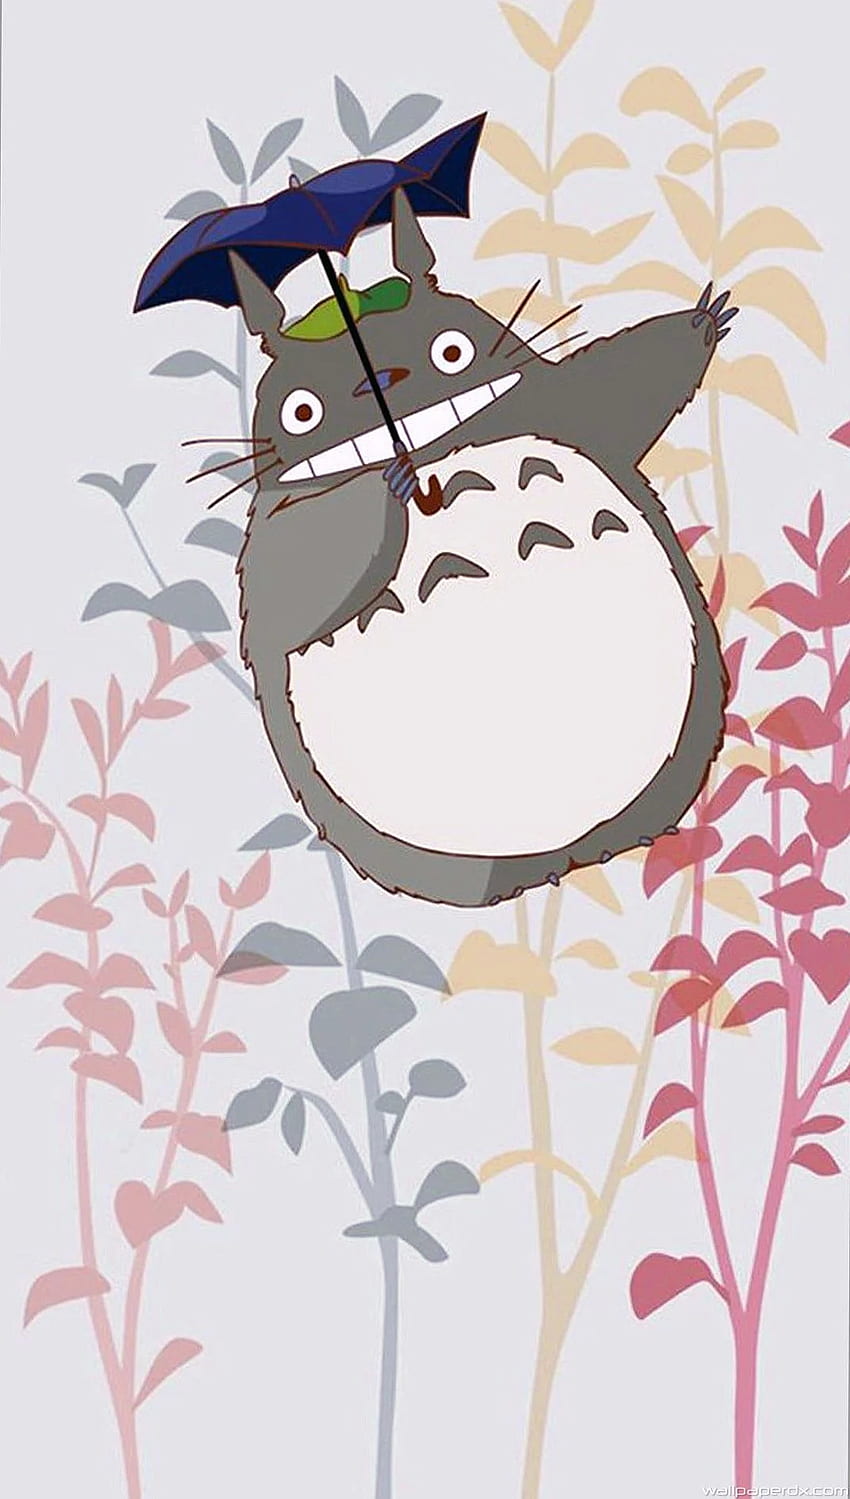 Totoro - Bỗng dưng cảm giác như muốn quay trở lại tuổi thơ. Totoro, chú mèo lớn, dễ thương và đáng yêu, làm chúng ta nhớ lại câu chuyện đáng yêu mà mình từng nghe. Bạn có muốn hiểu thêm về Totoro và những câu chuyện được thể hiện qua ảnh không? Hãy đến với chúng tôi!